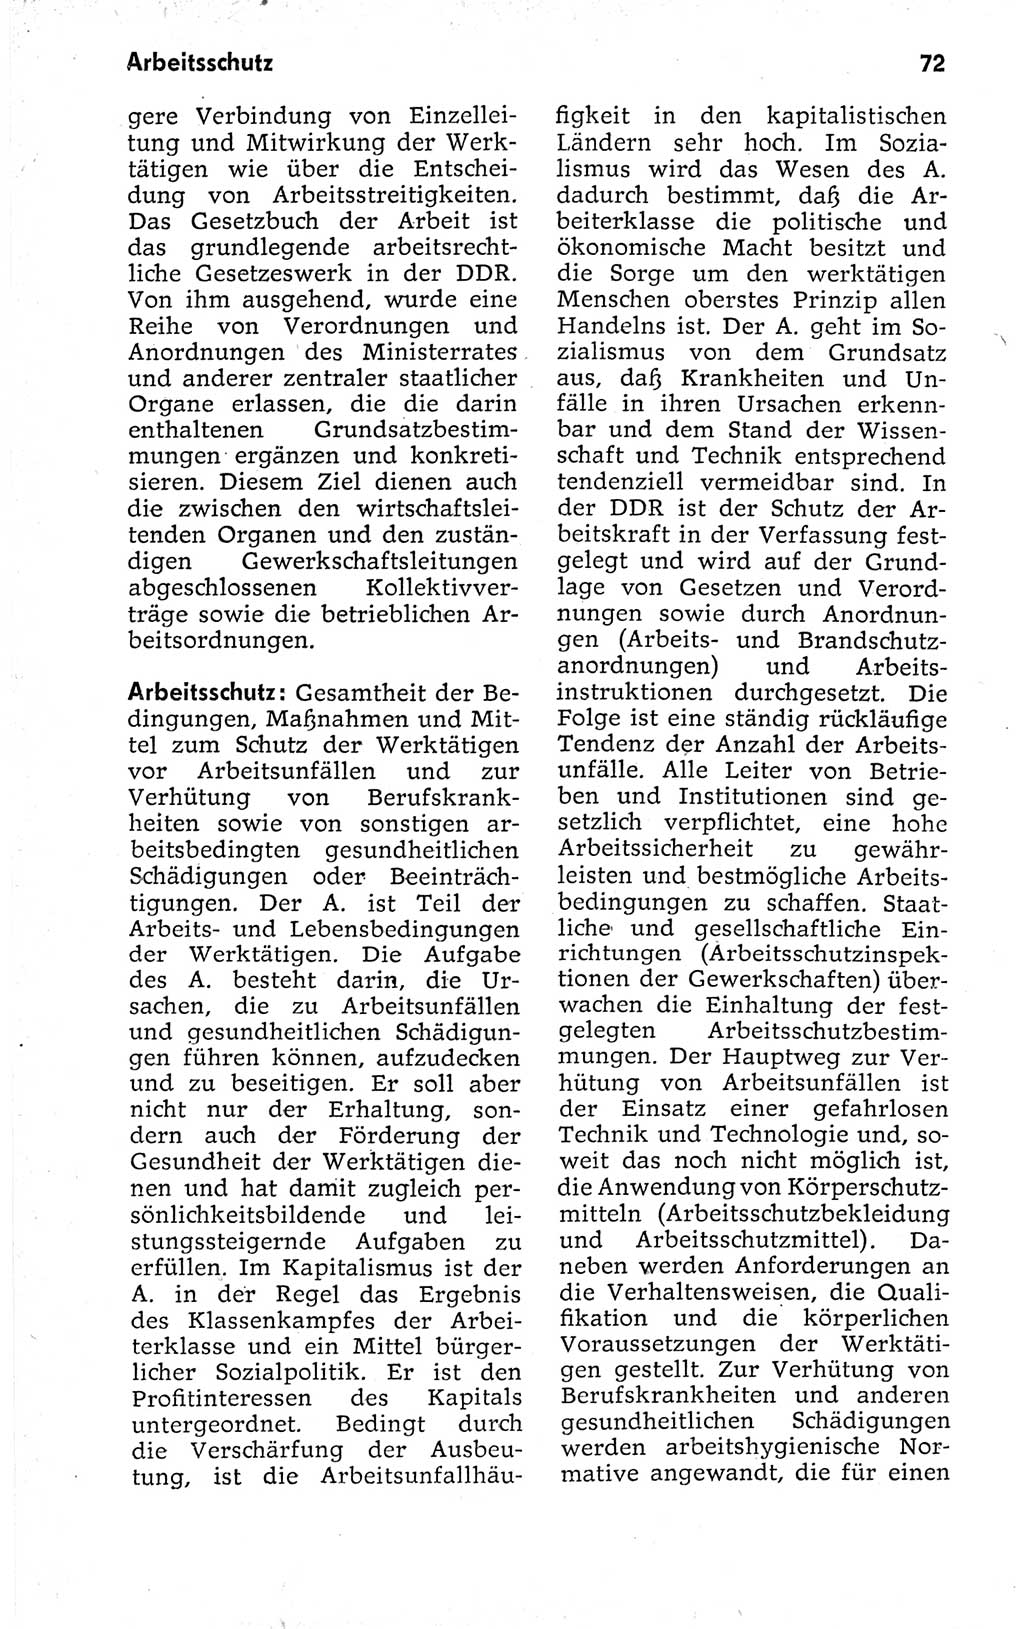 Kleines politisches Wörterbuch [Deutsche Demokratische Republik (DDR)] 1973, Seite 72 (Kl. pol. Wb. DDR 1973, S. 72)